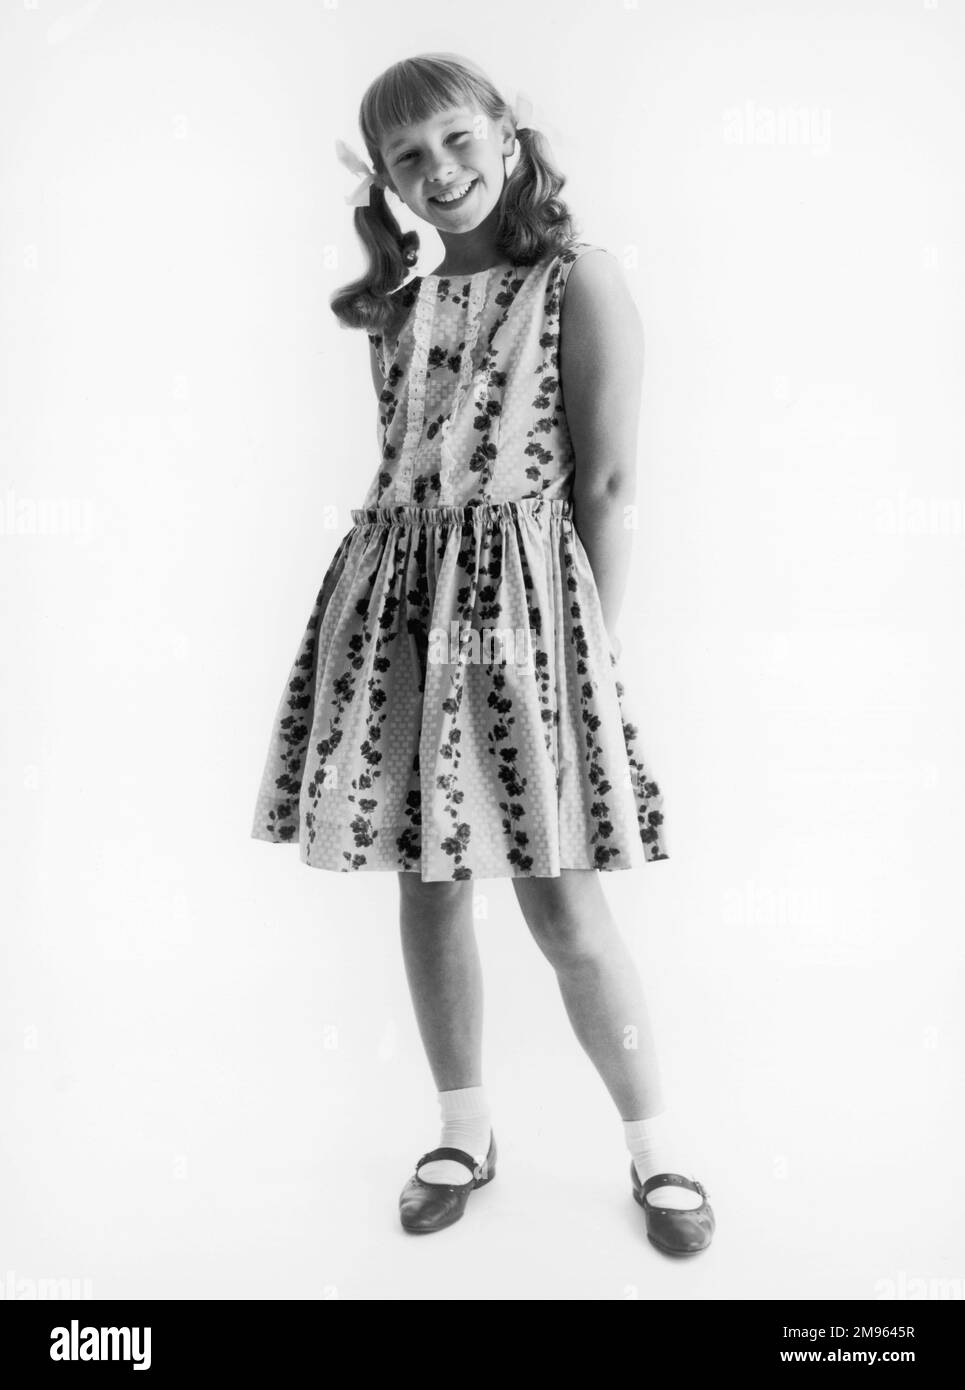 Ein Schulmädchen modelliert ein ärmelloses, geblümtes Sommerkleid, getragen mit Knöchelsocken und Sommerschuhen, ihr Haar in Zöpfen und Bändern. Stockfoto